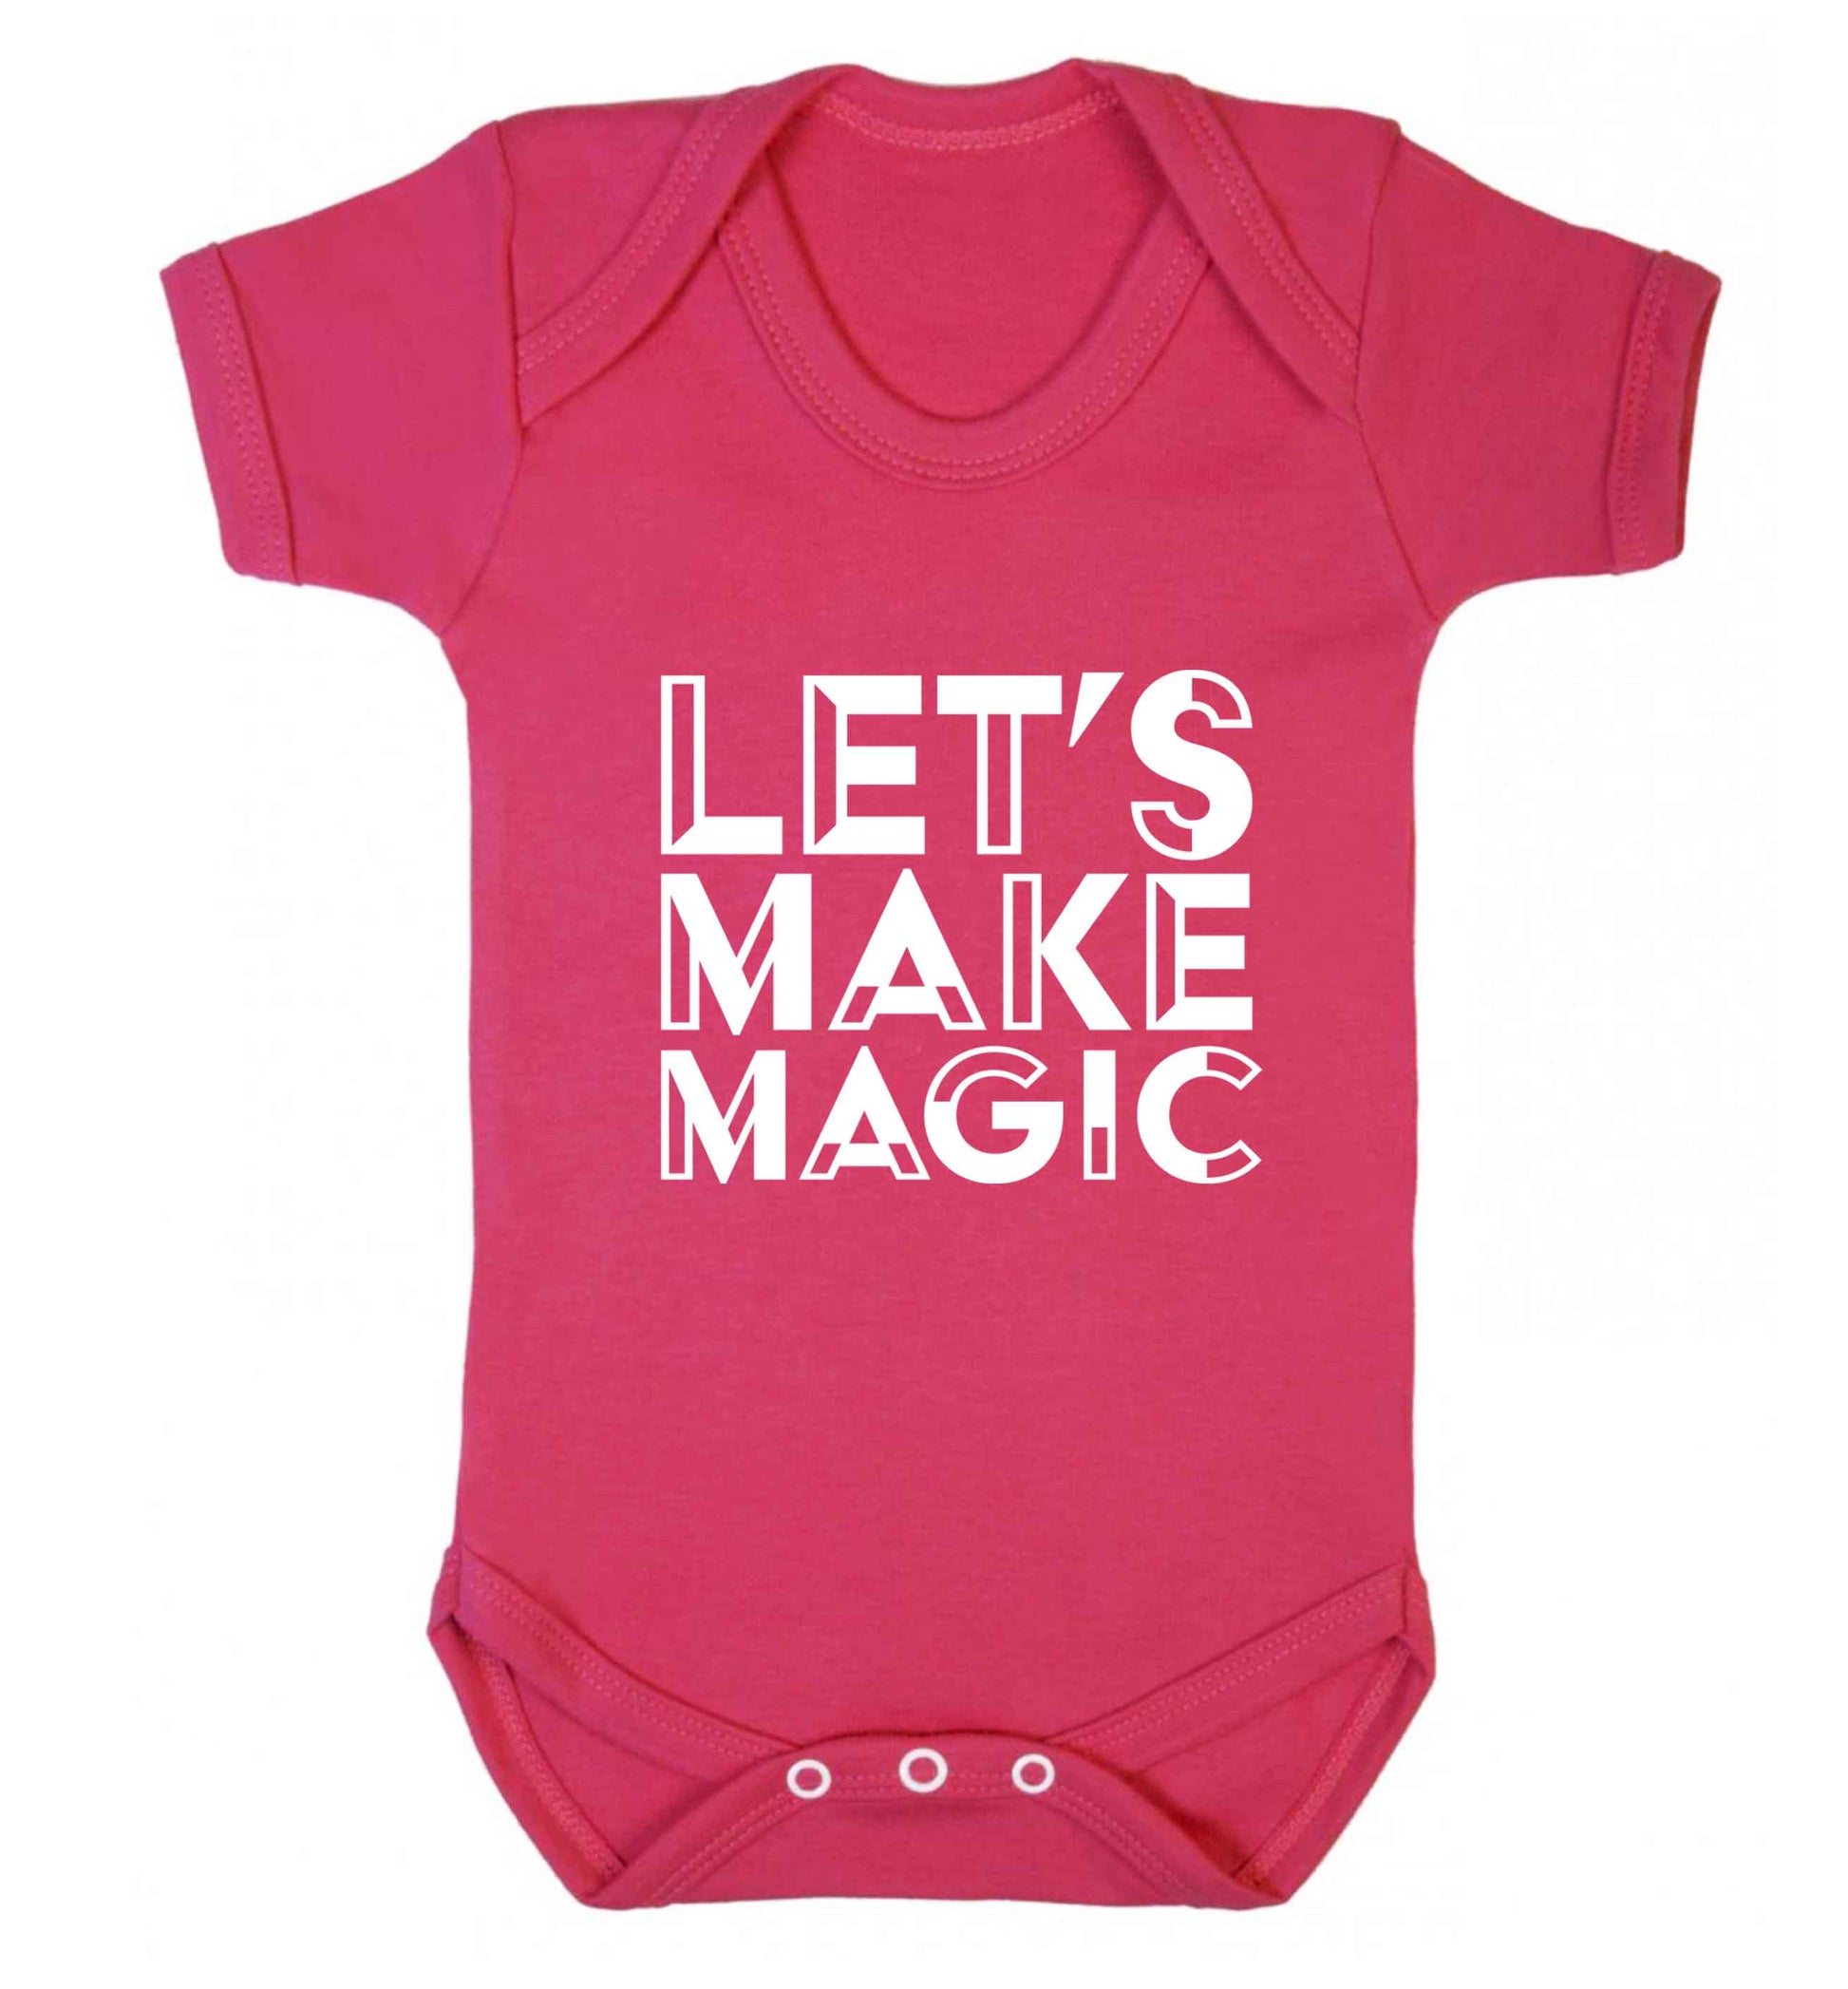 Let's make magic baby vest dark pink 18-24 months